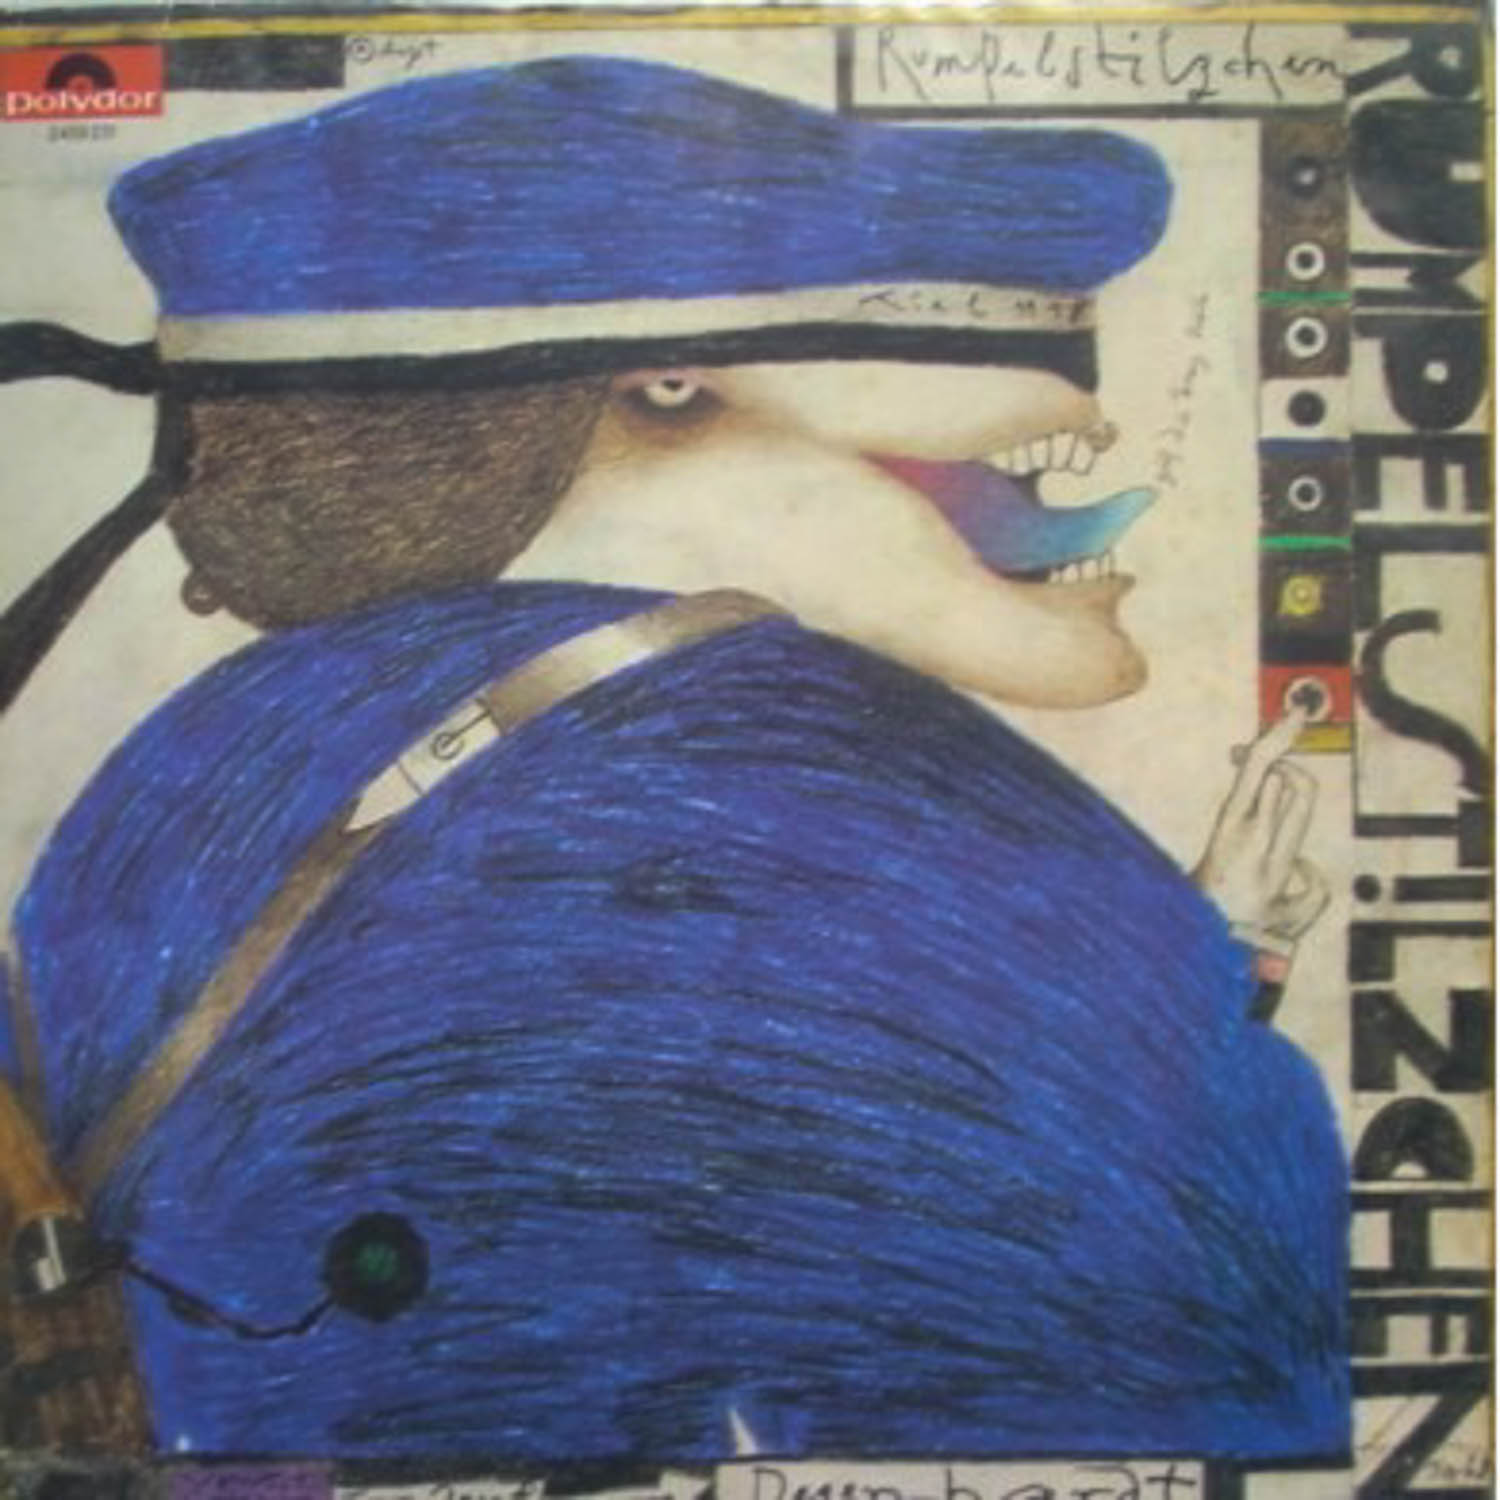 Franz Josef Degenhardt  Rumpelstilzchen (46 593)  *LP 12'' (Vinyl)*. 